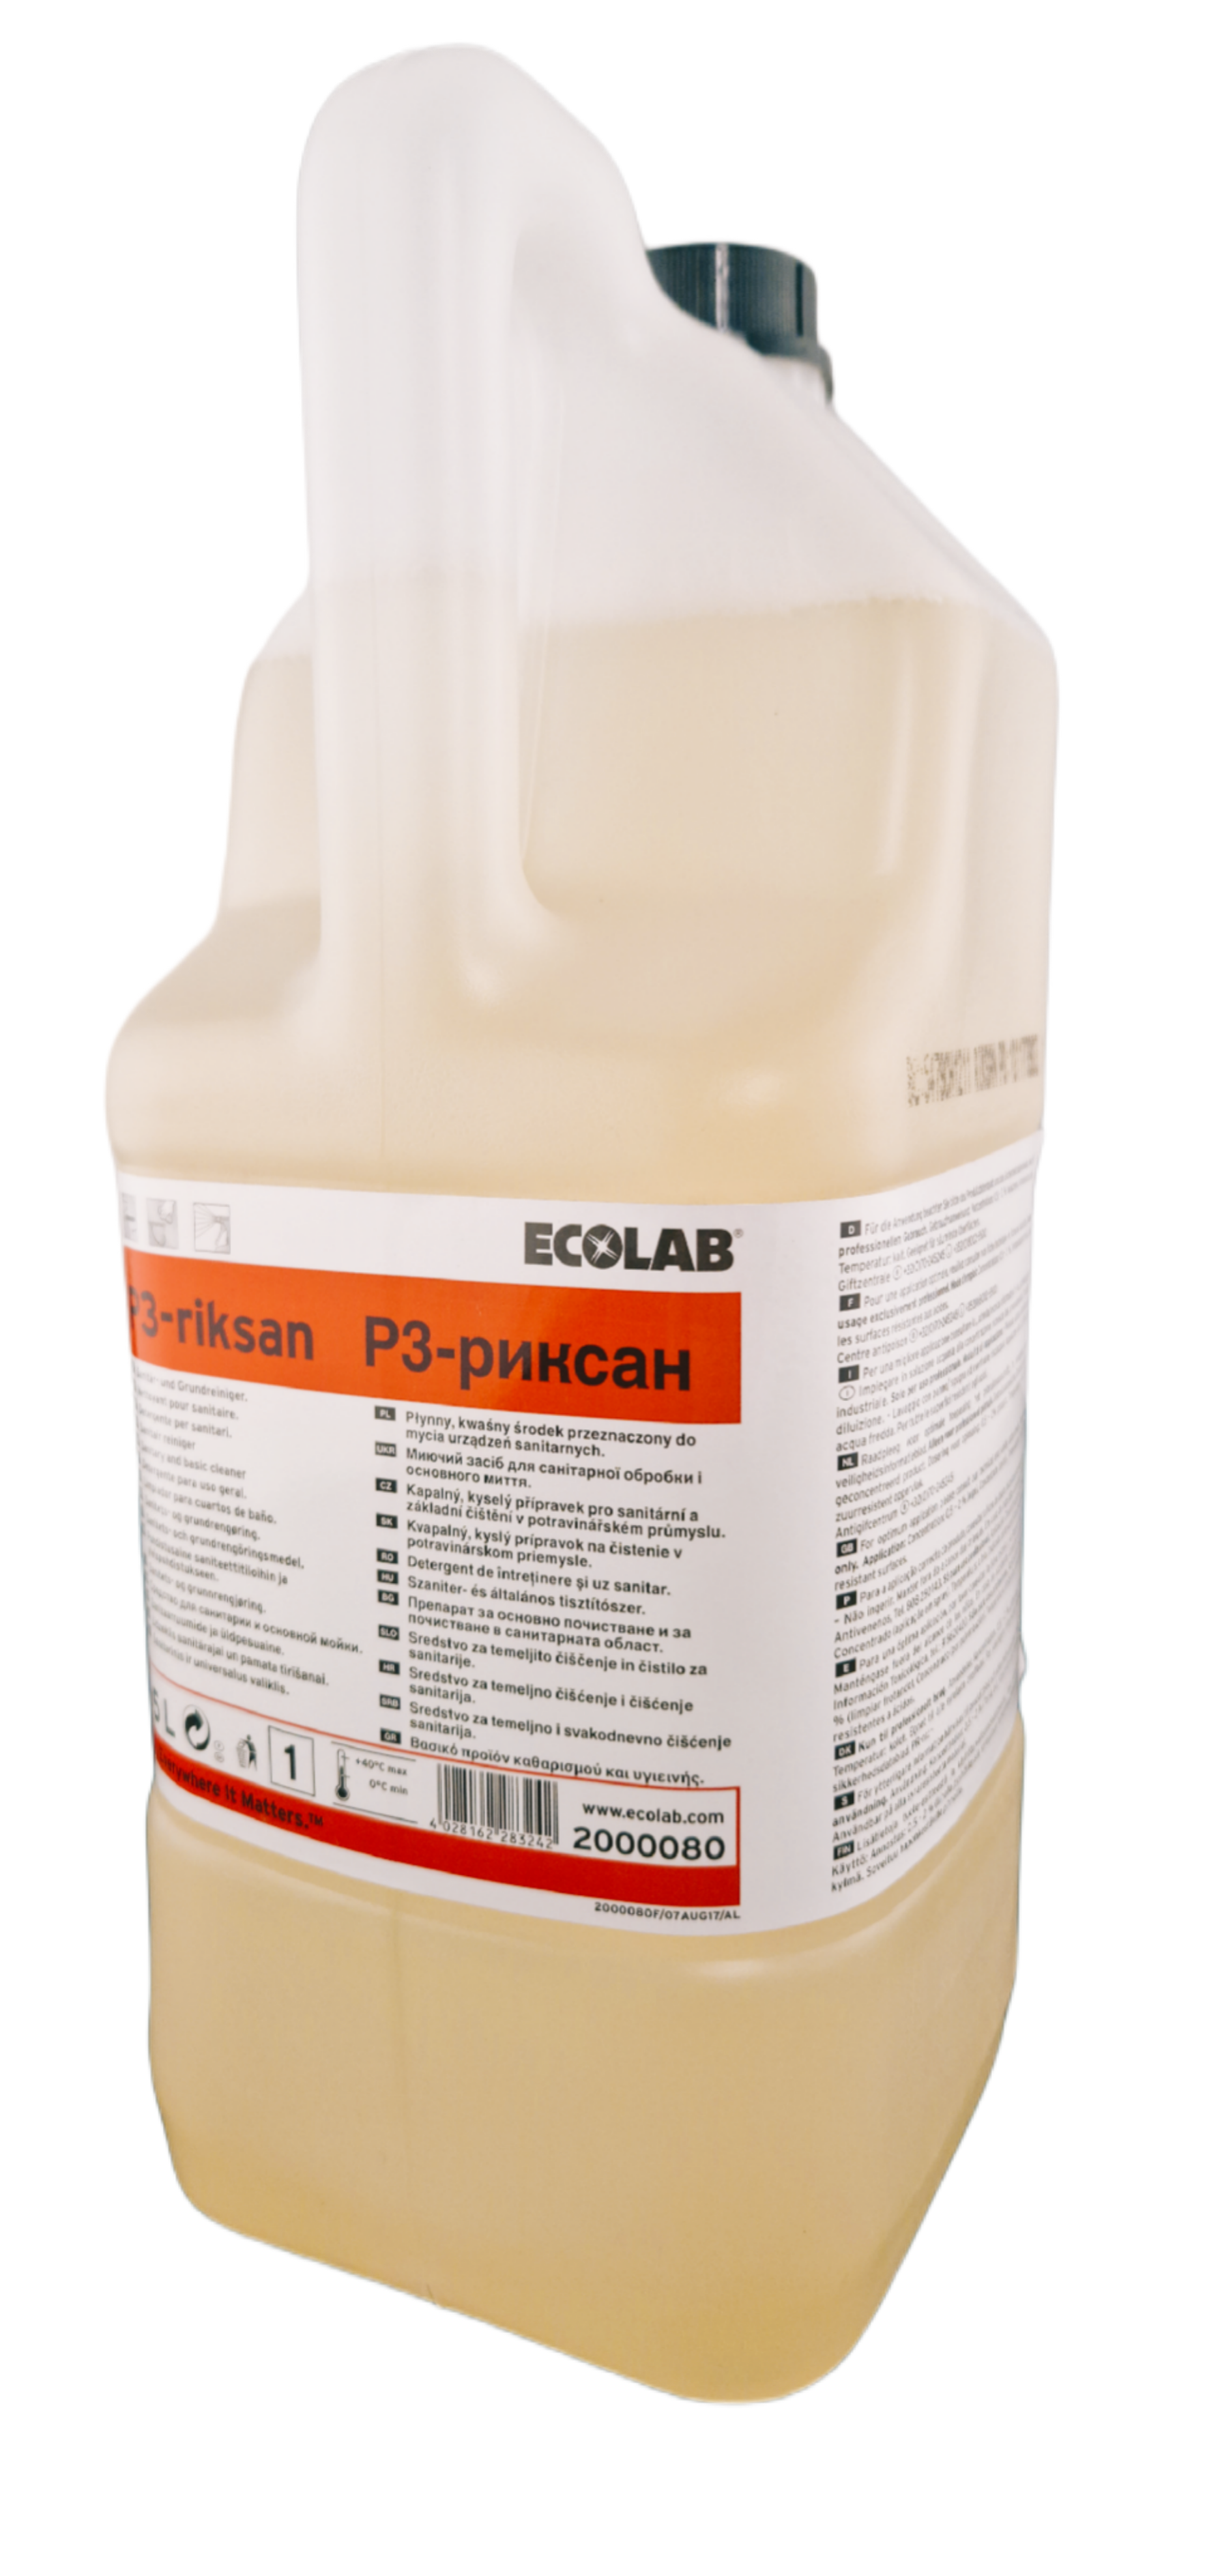 Ecolab - P3 Riksan® Sanitär- und Grundreiniger 5 Liter